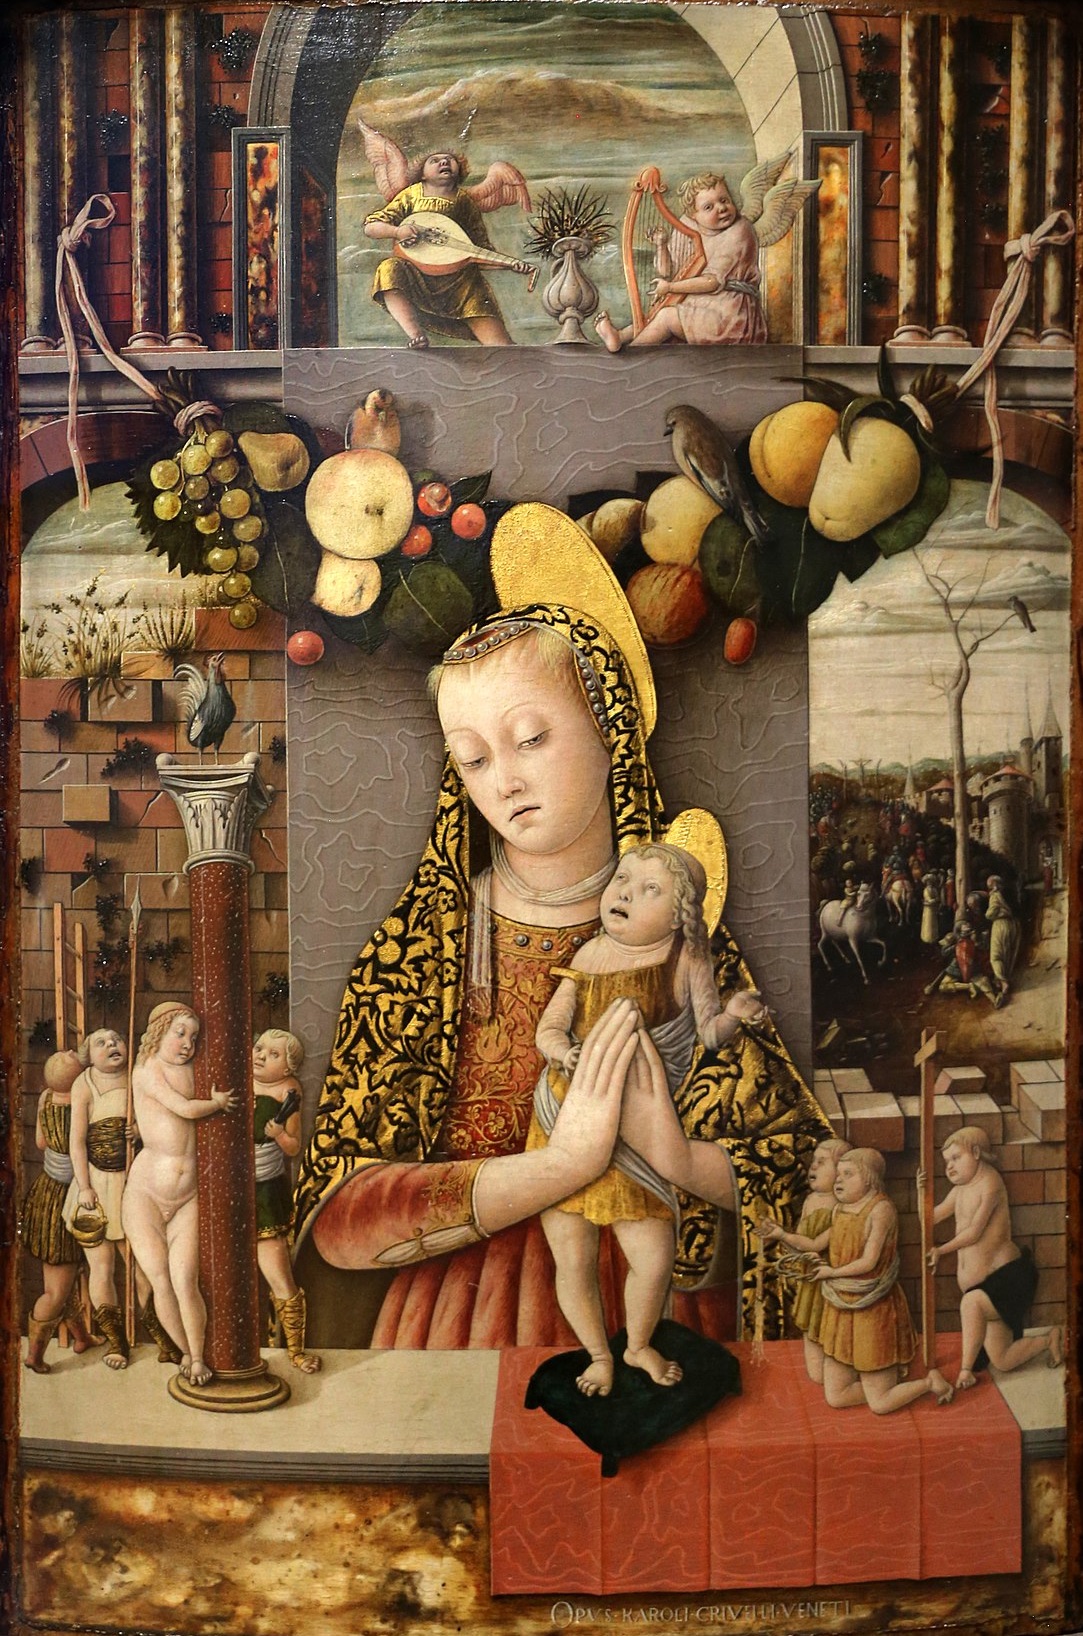 苦難聖母 by Carlo Crivelli - 1455 年至 1459 年 - 71 x 48 釐米 